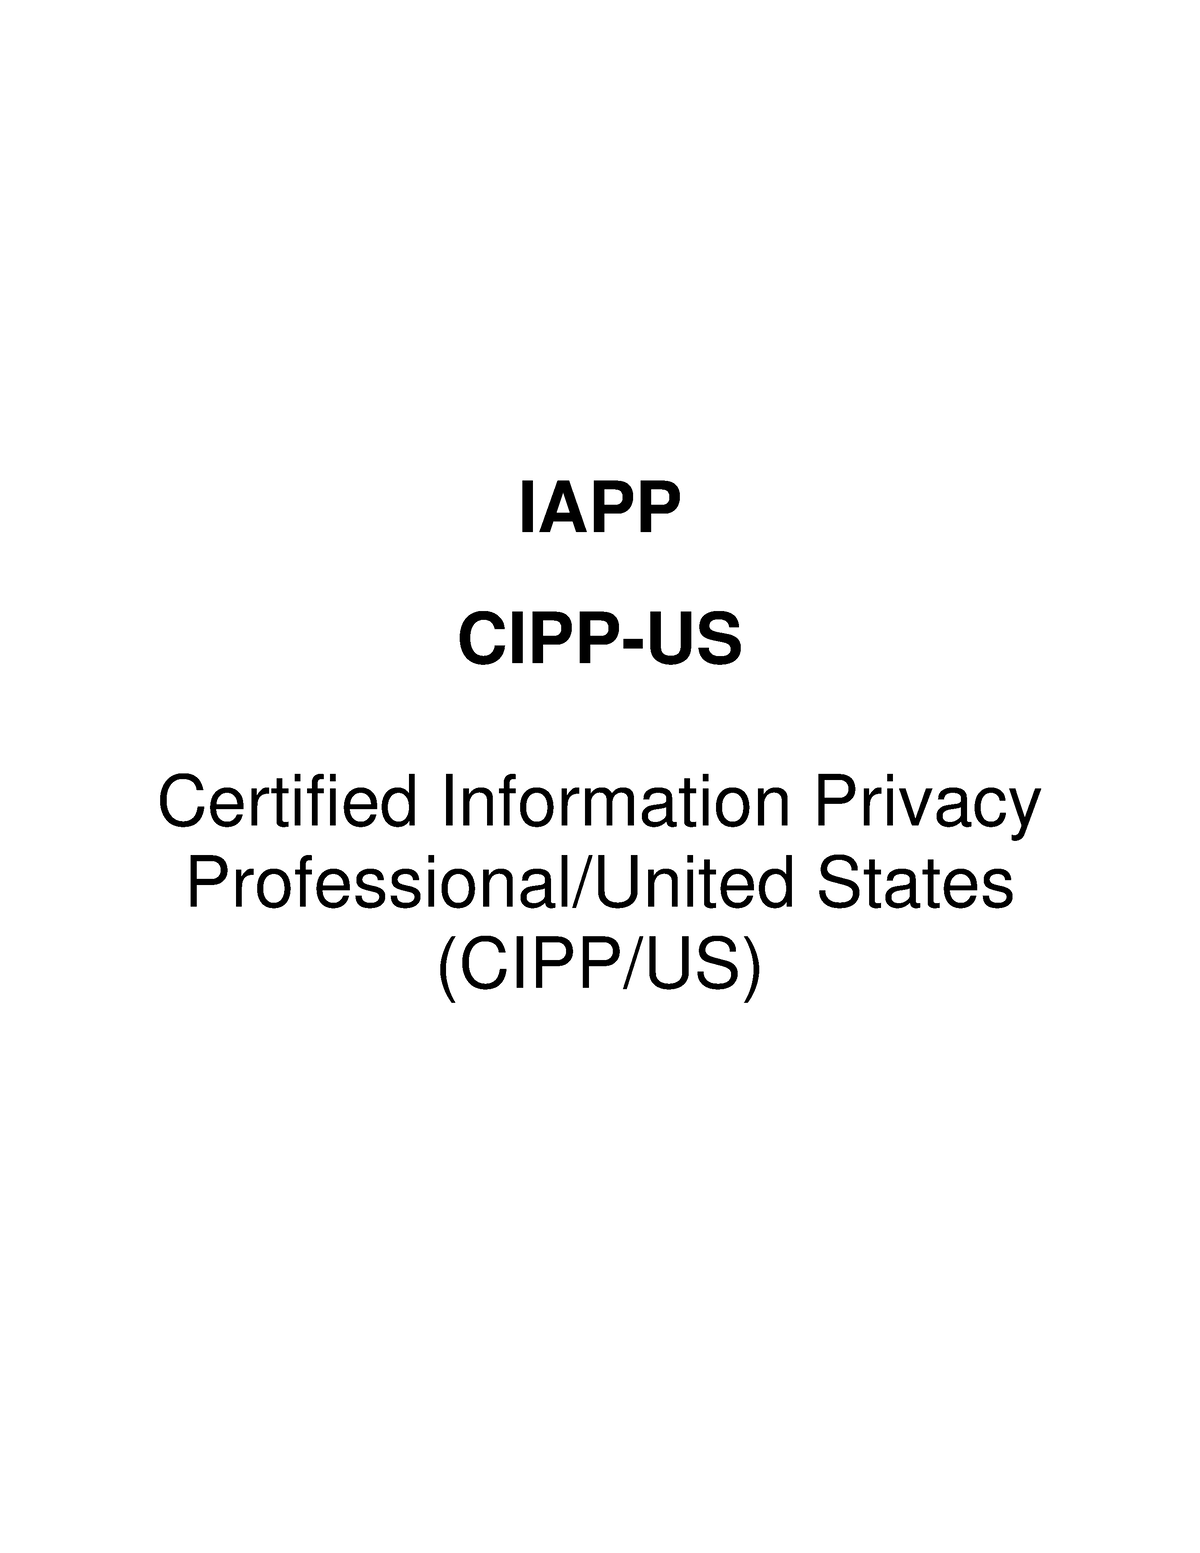 CIPP-US Deutsch Prüfungsfragen